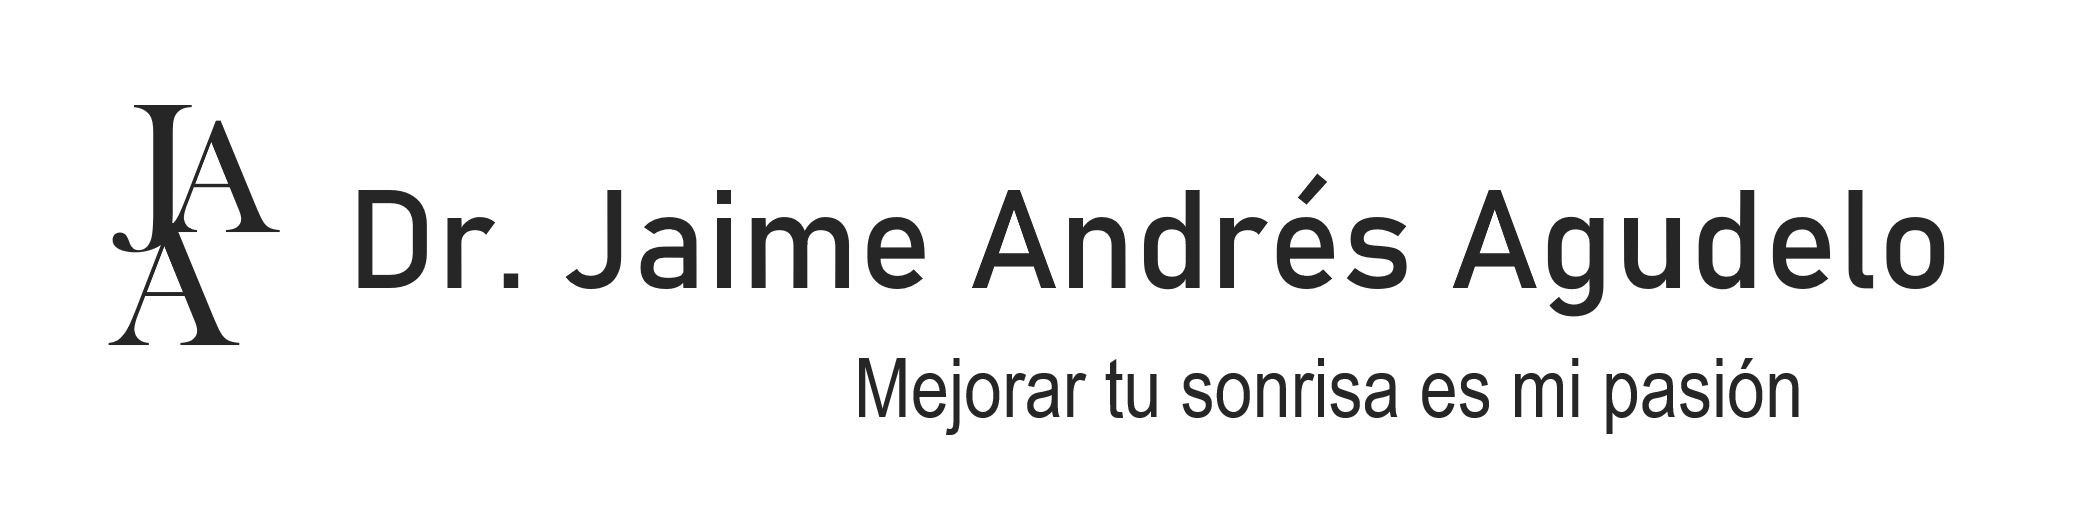 Jaime Andres Agudelo